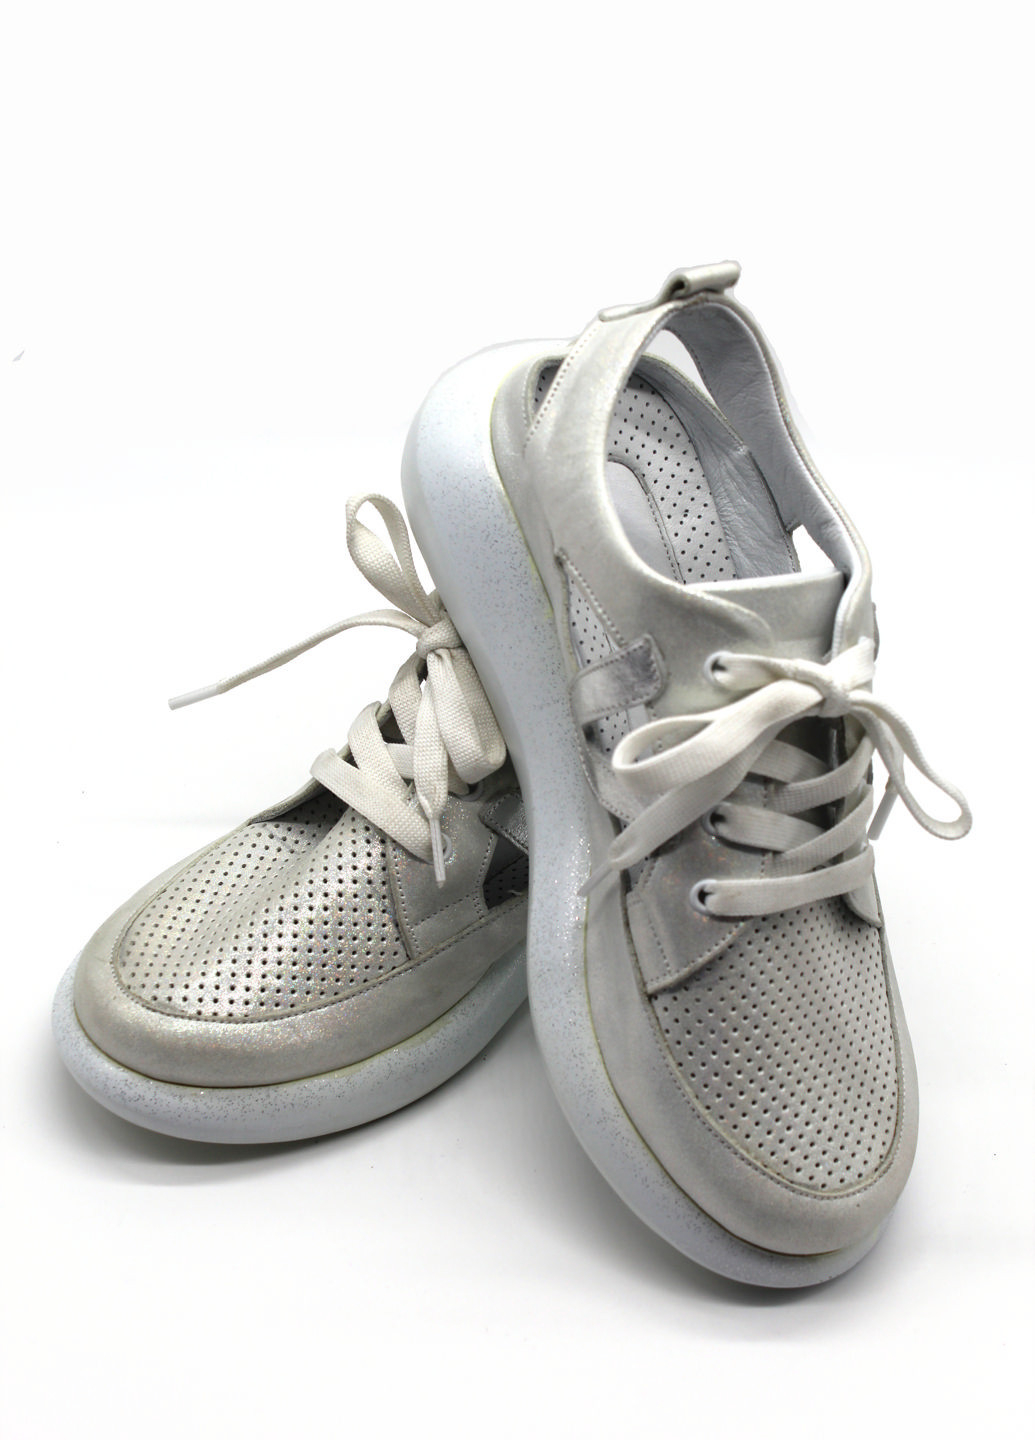 Белые босоножки Rifellini на шнурках с глиттером, со шнуровкой, с тиснением, с перфорацией